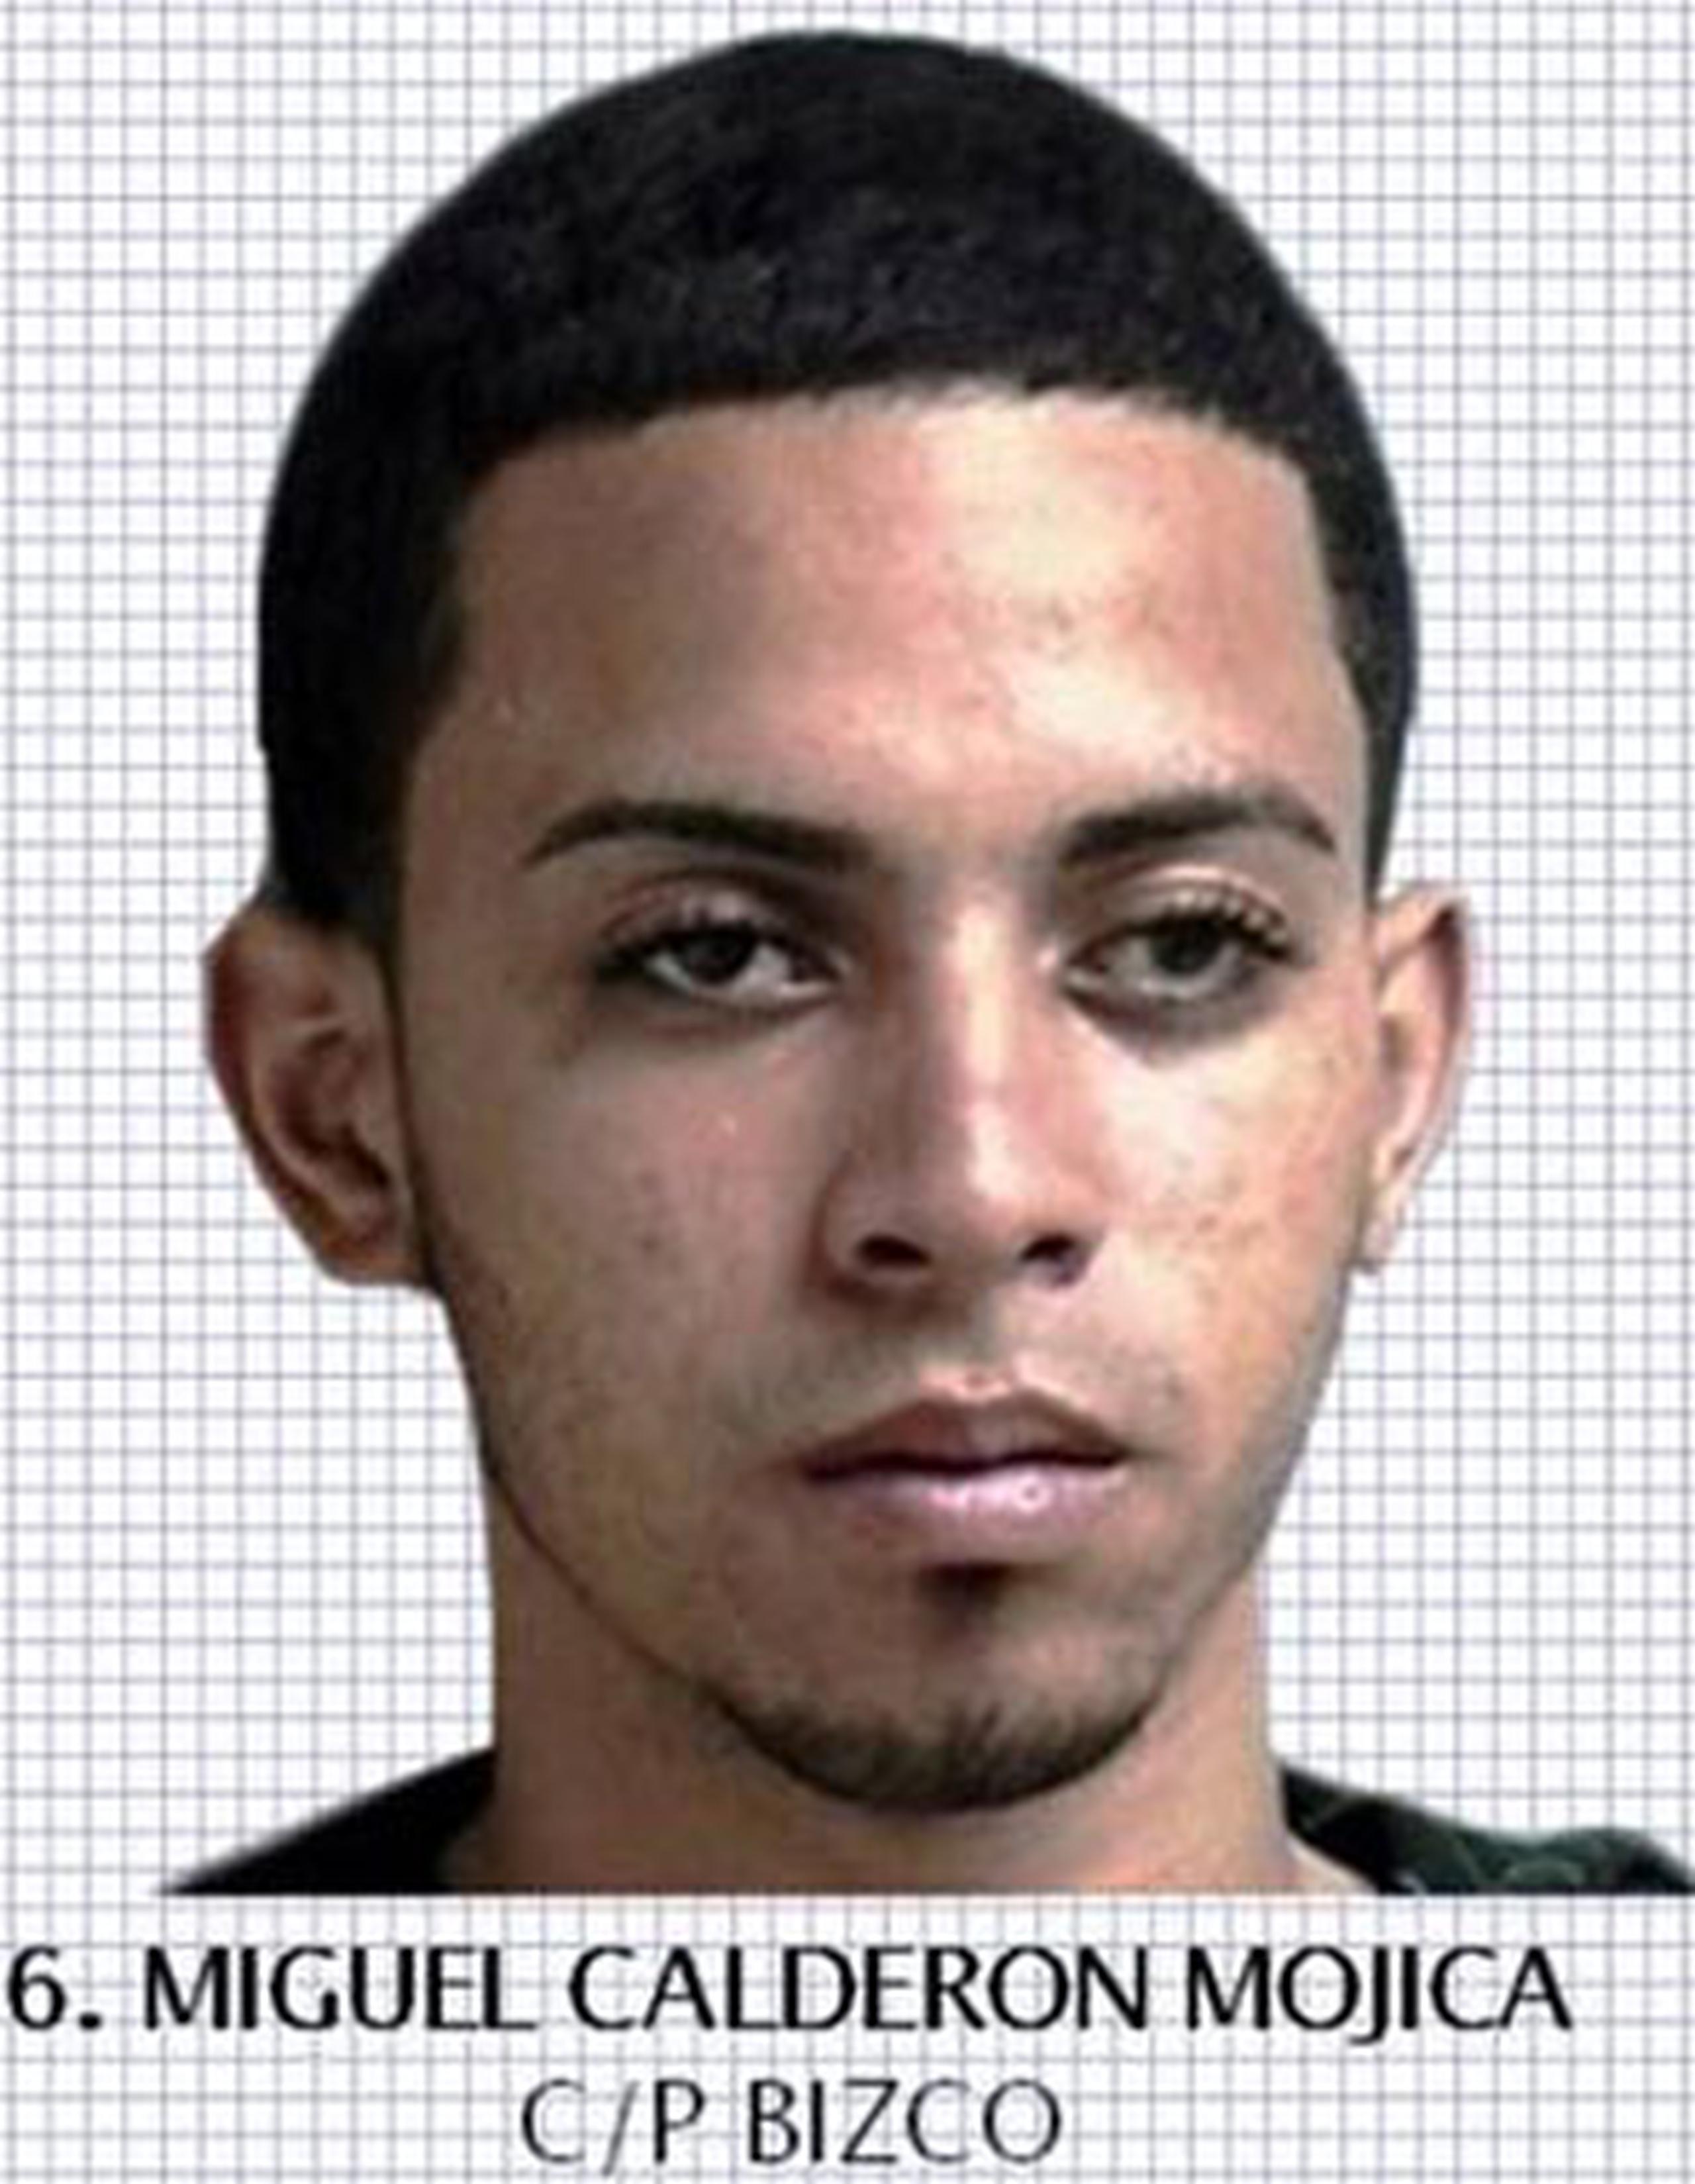 Miguel Calderón Mojica, conocido como Bizco y de 19 años, fue detenido en medio de una intervención vehicular en la salida 13, de la autopista 53, en Naguabo. (Suministrada)